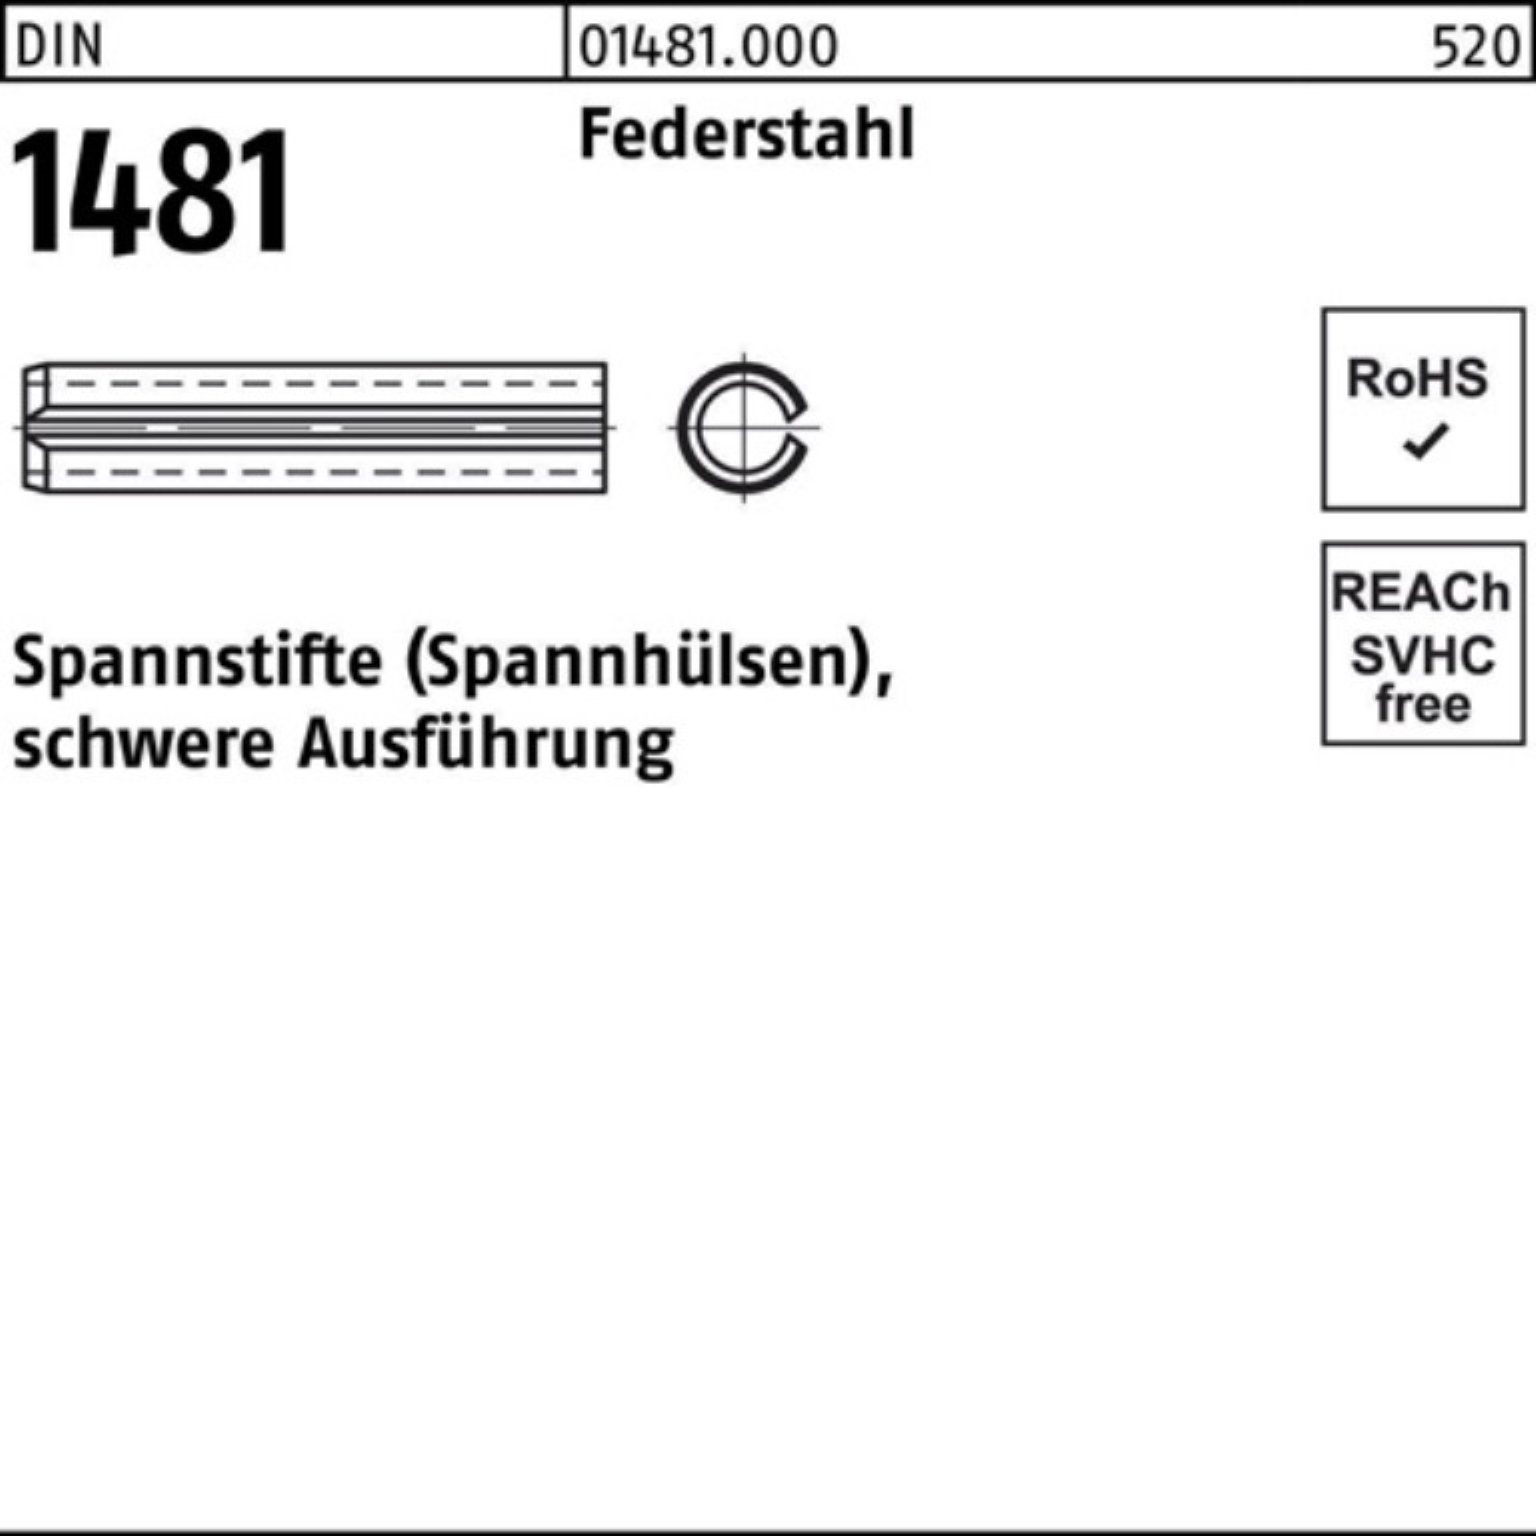 Reyher Spannstift 100er Pack Spannstift DIN 1481 28x 140 Federstahl schwere Ausführung